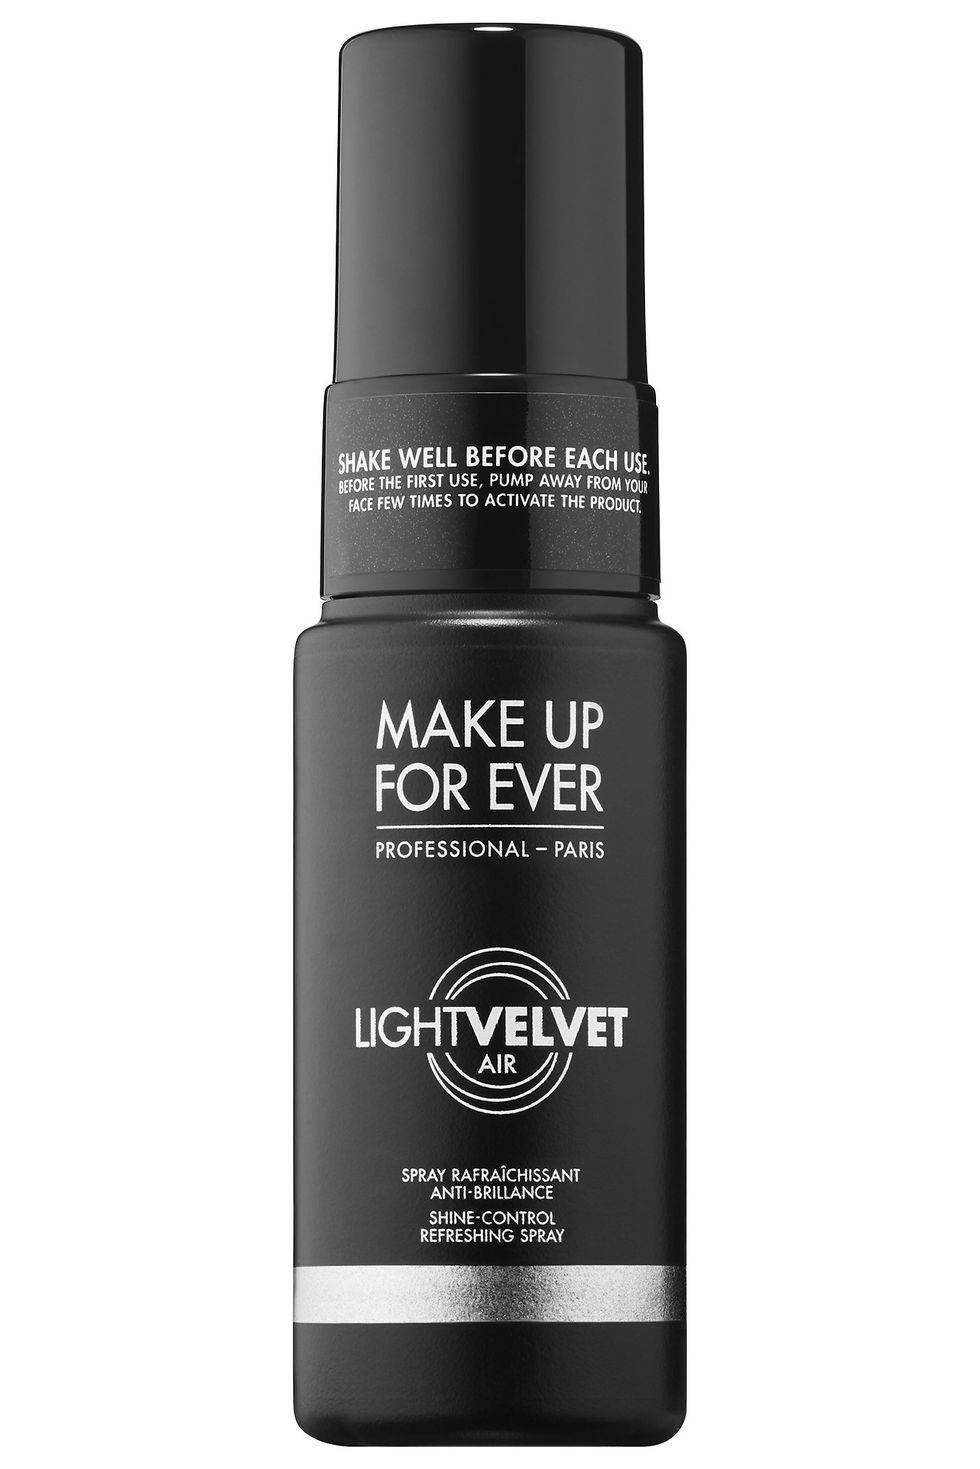 Light Velvet Air Shine-Control Refreshing Spray 